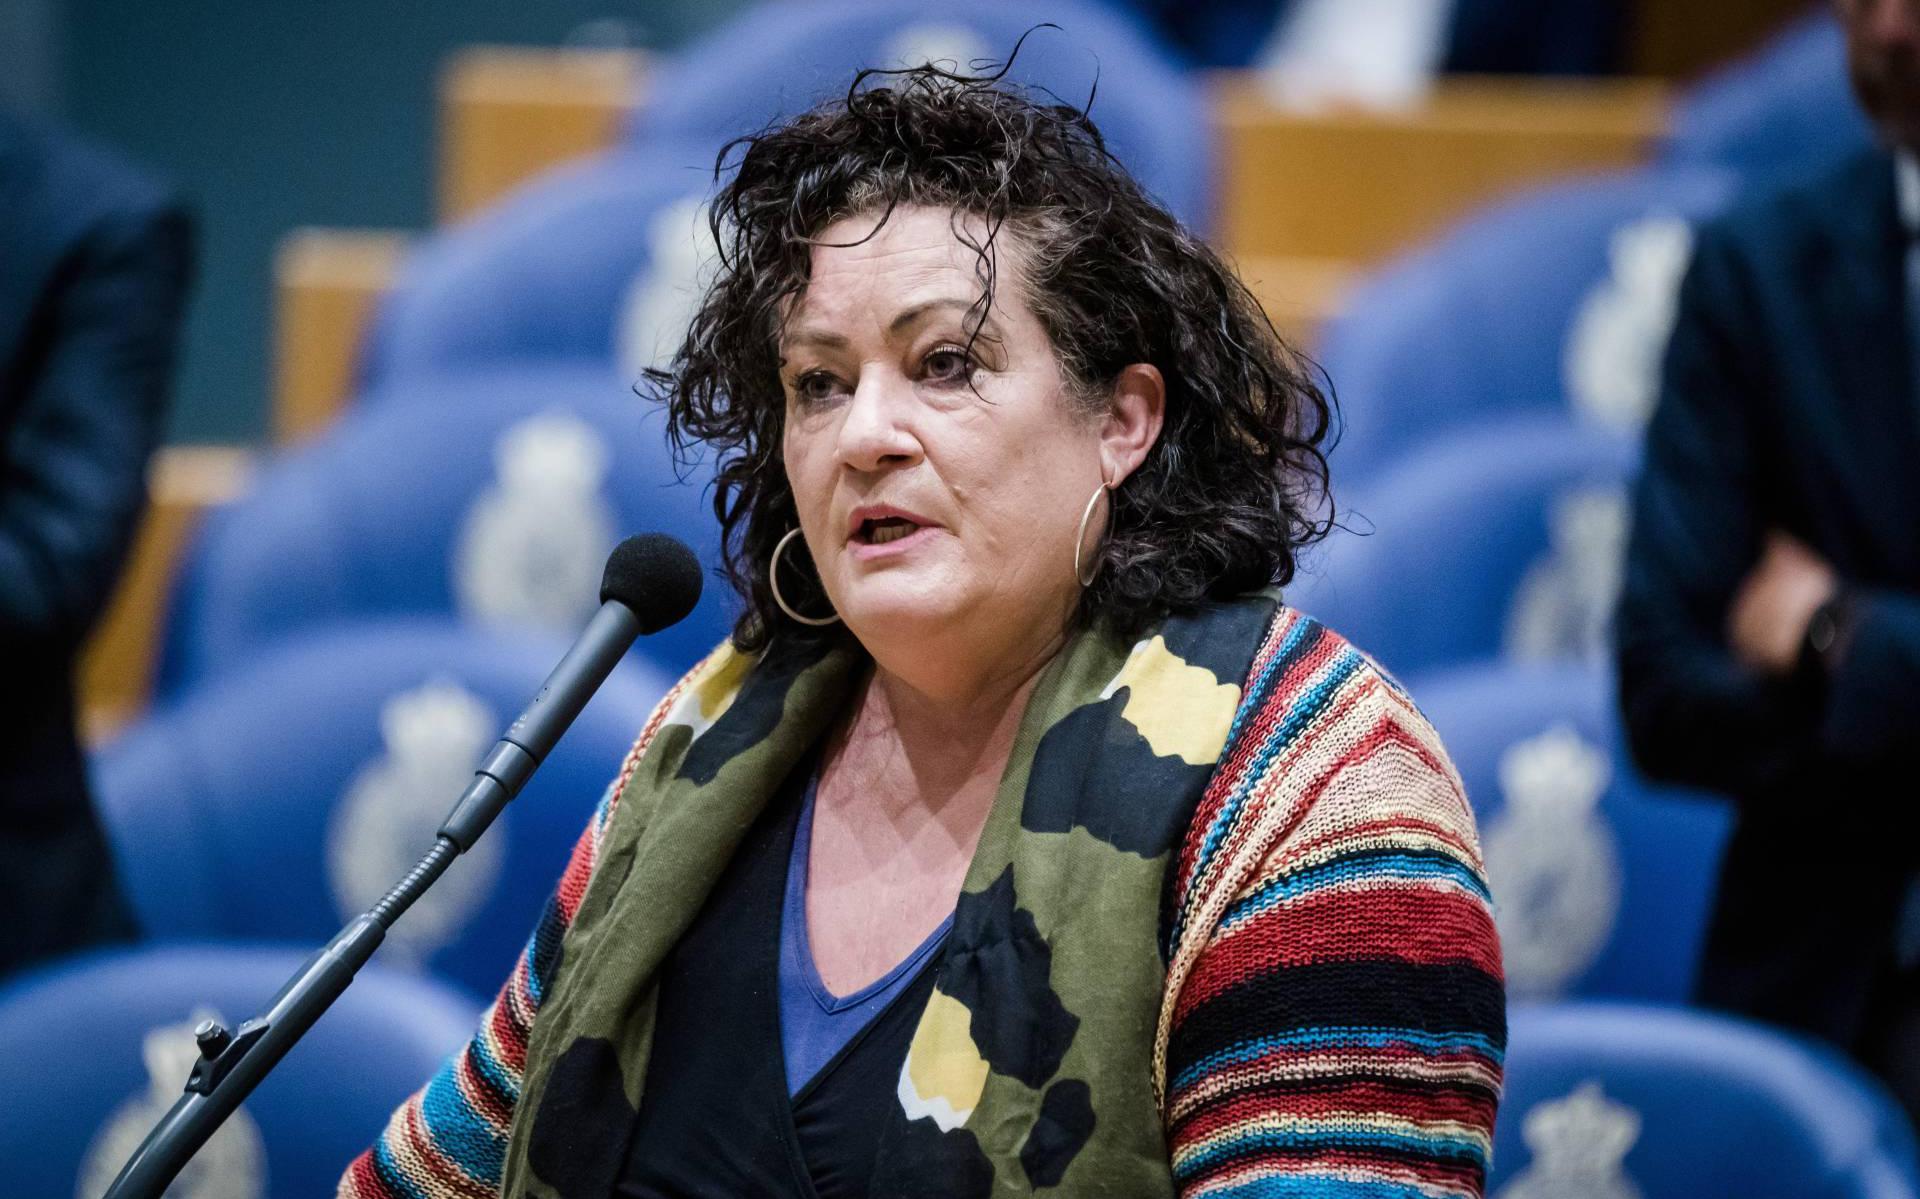 BBB-leider Van der Plas pleit voor bemiddelaar in boerenconflict